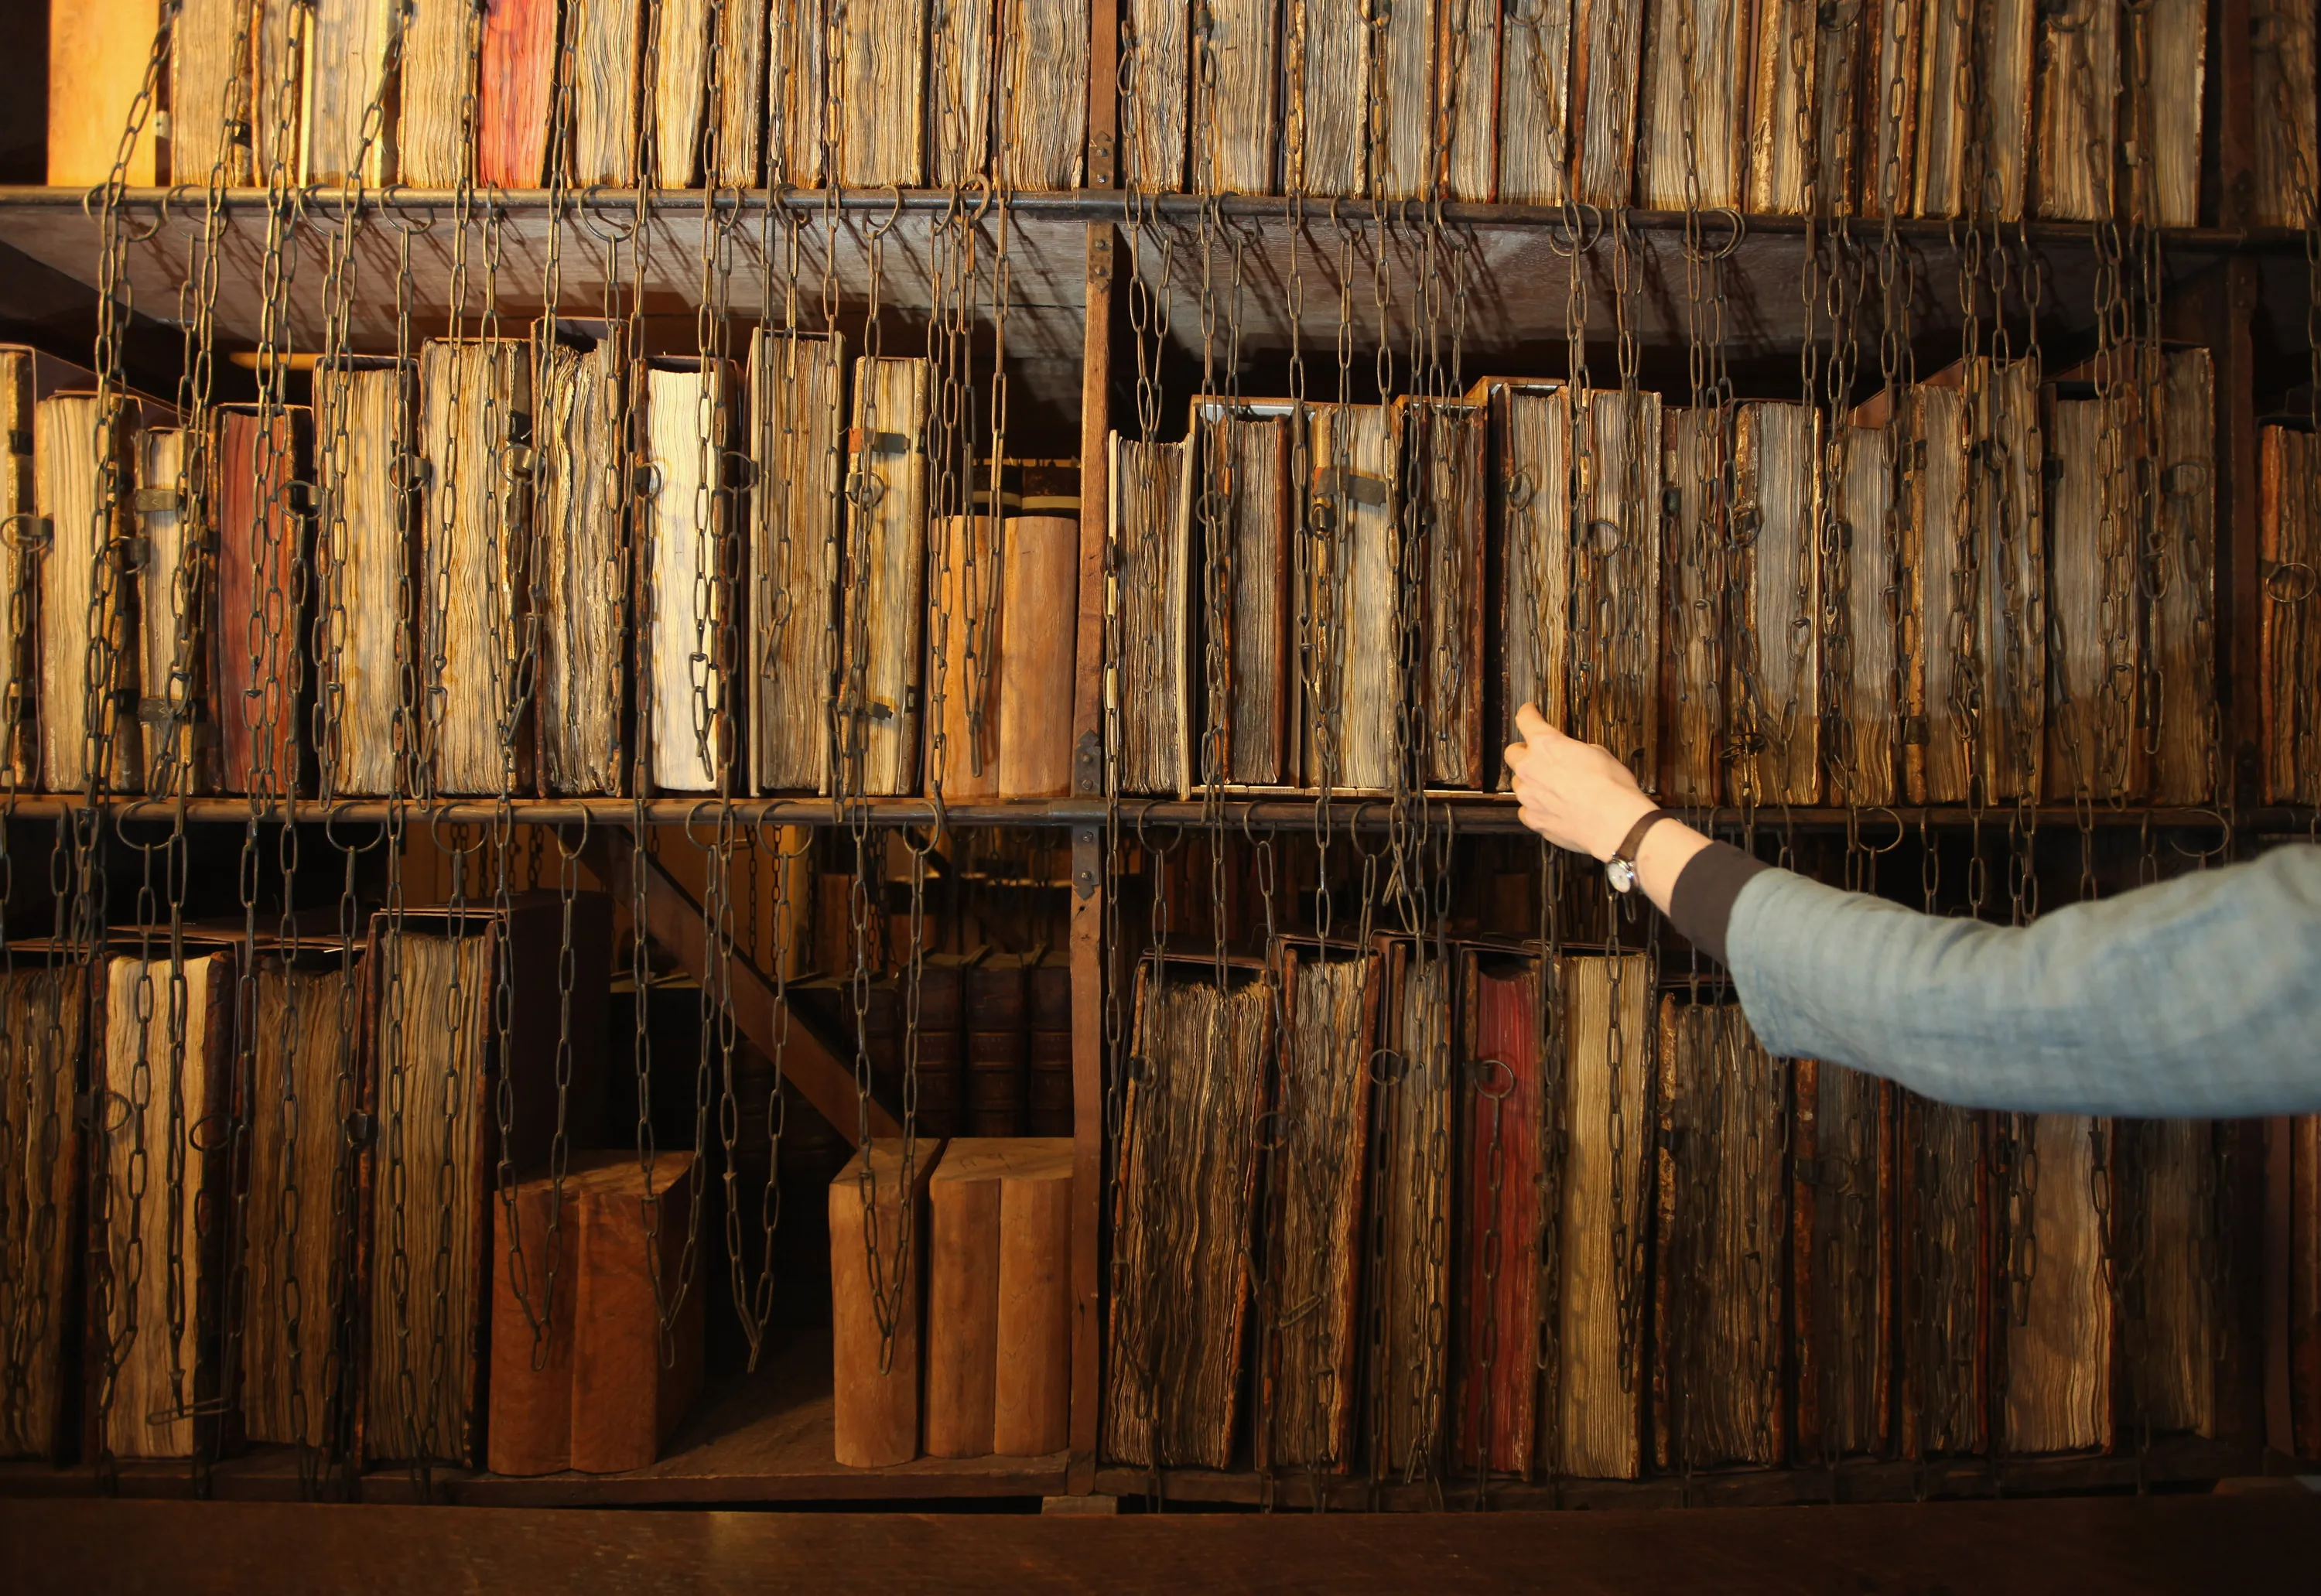 Домашний 1 архив. Цепная библиотека в Херефорде. Старинная библиотека. Полки с книгами в библиотеке. Библиотека в древности.